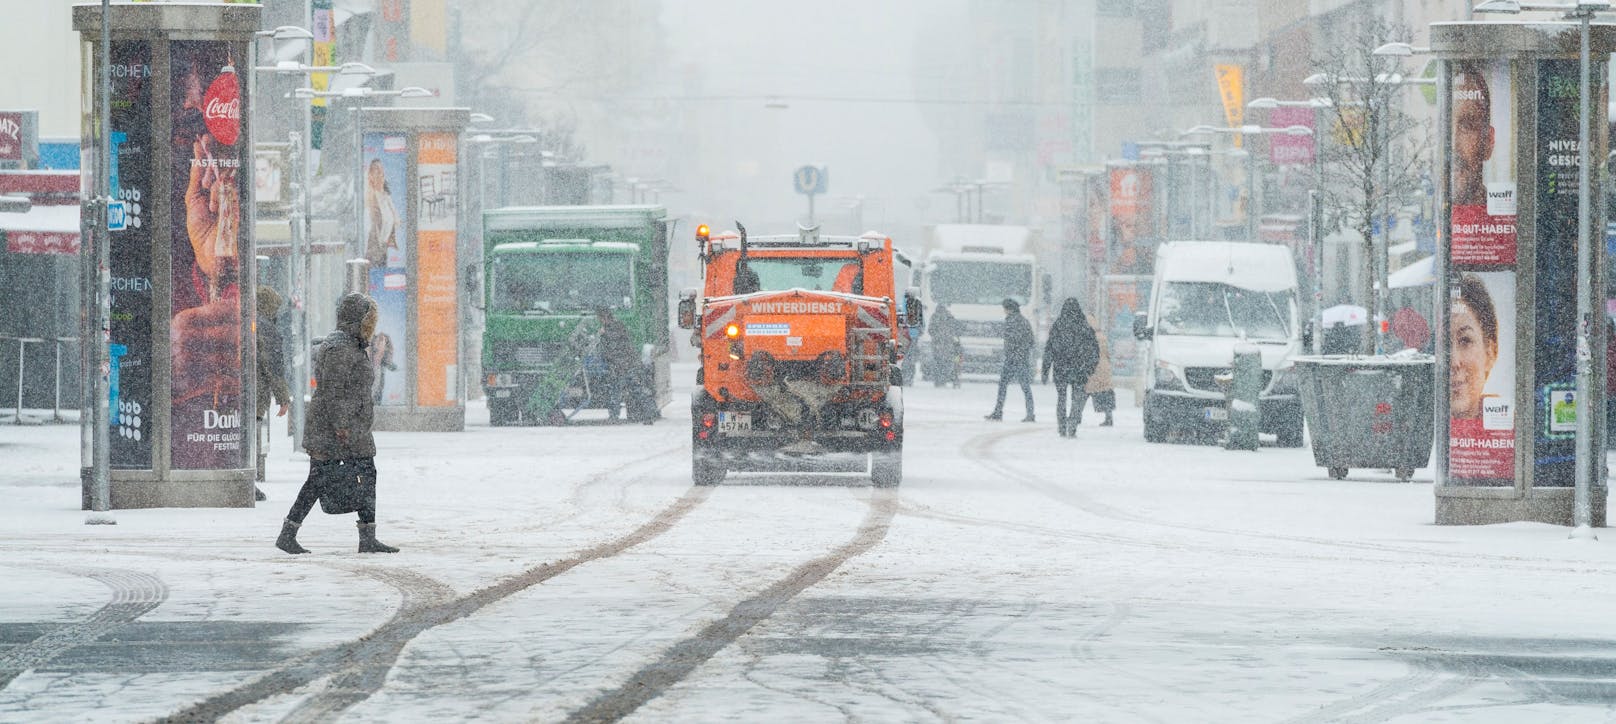 Schnee in Wien - noch ist es herbstlich, doch bald könnte die Bundeshauptstadt weiß werden (Archivfoto)